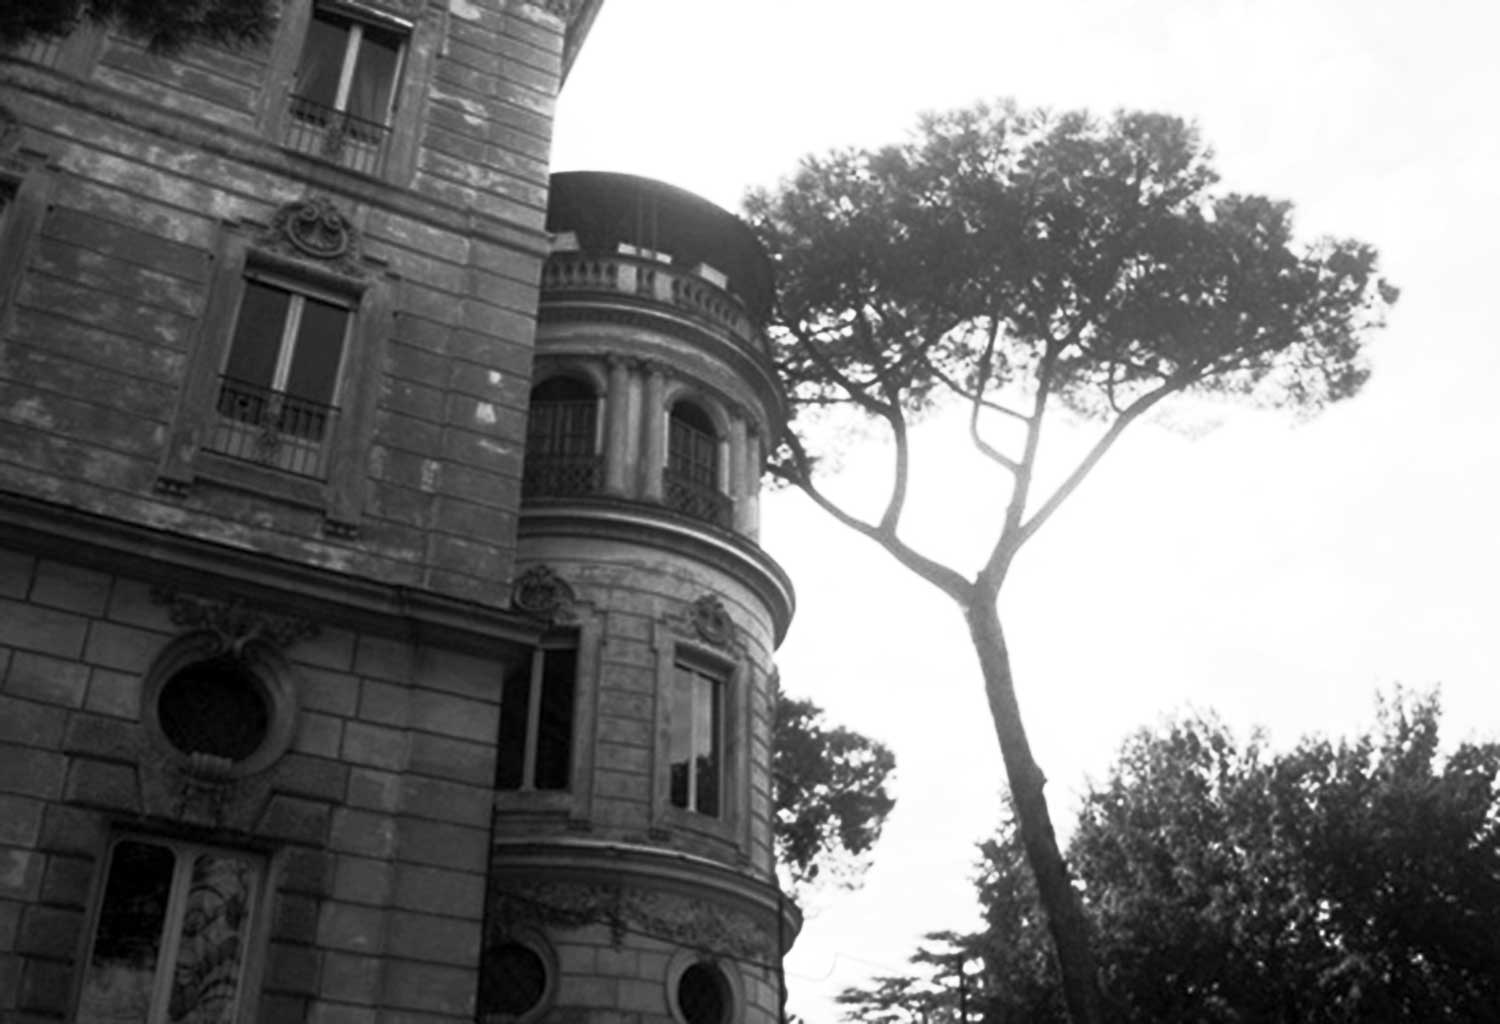 17 - Ristrutturazione del fabbricato Sforza Cesarini in via Garibaldi, Roma, per Soc. Liberty ‘70 - Vista esterna